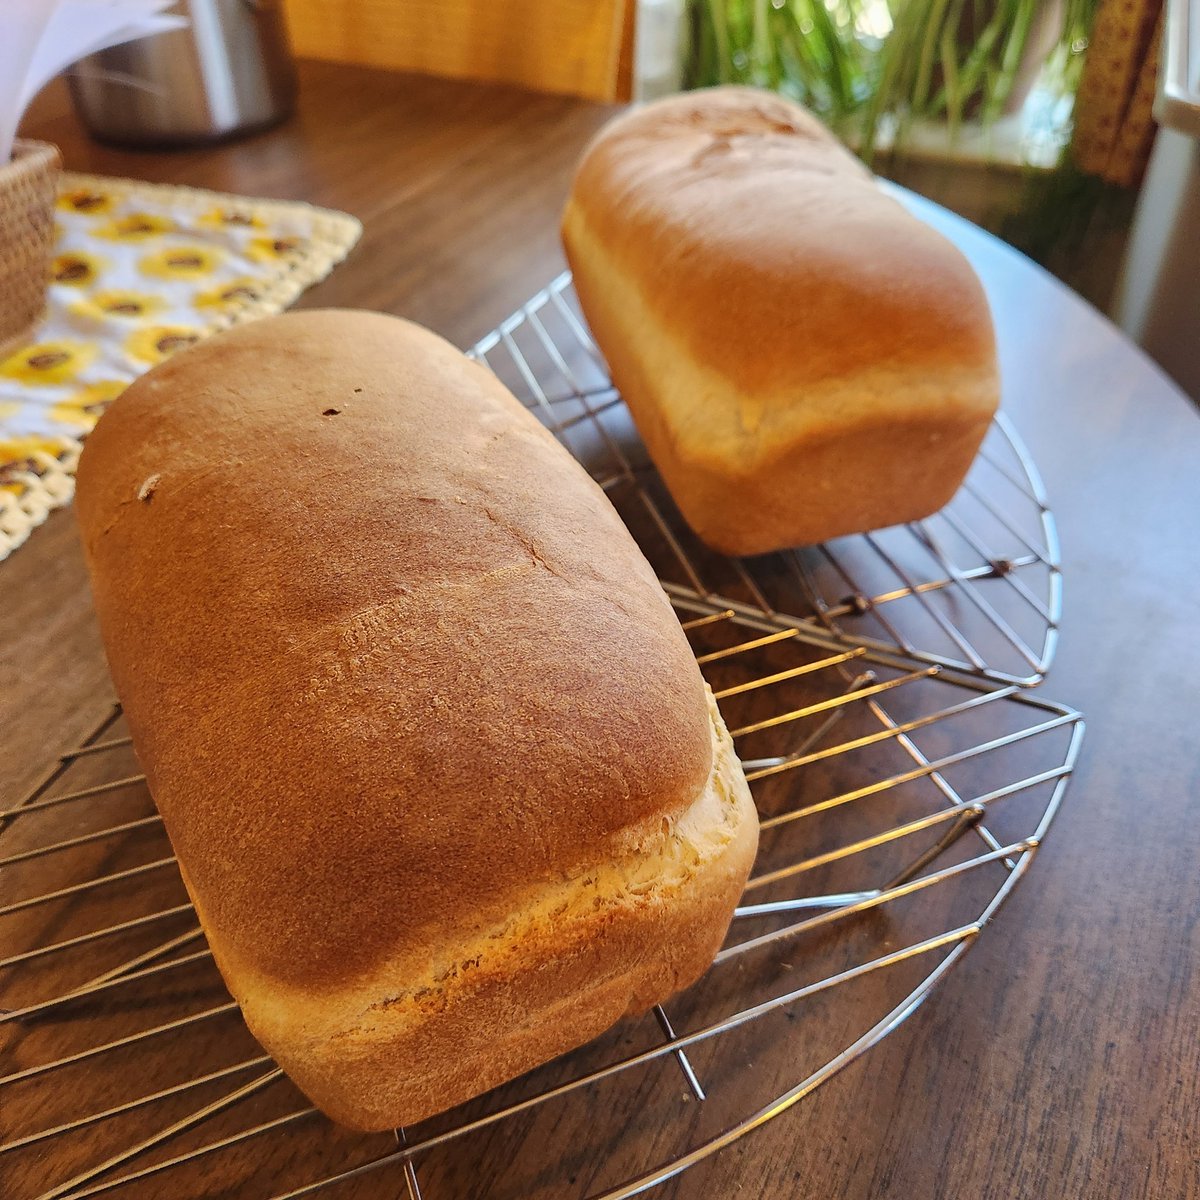 Fresh Homemade Bread ... Delicious 😋